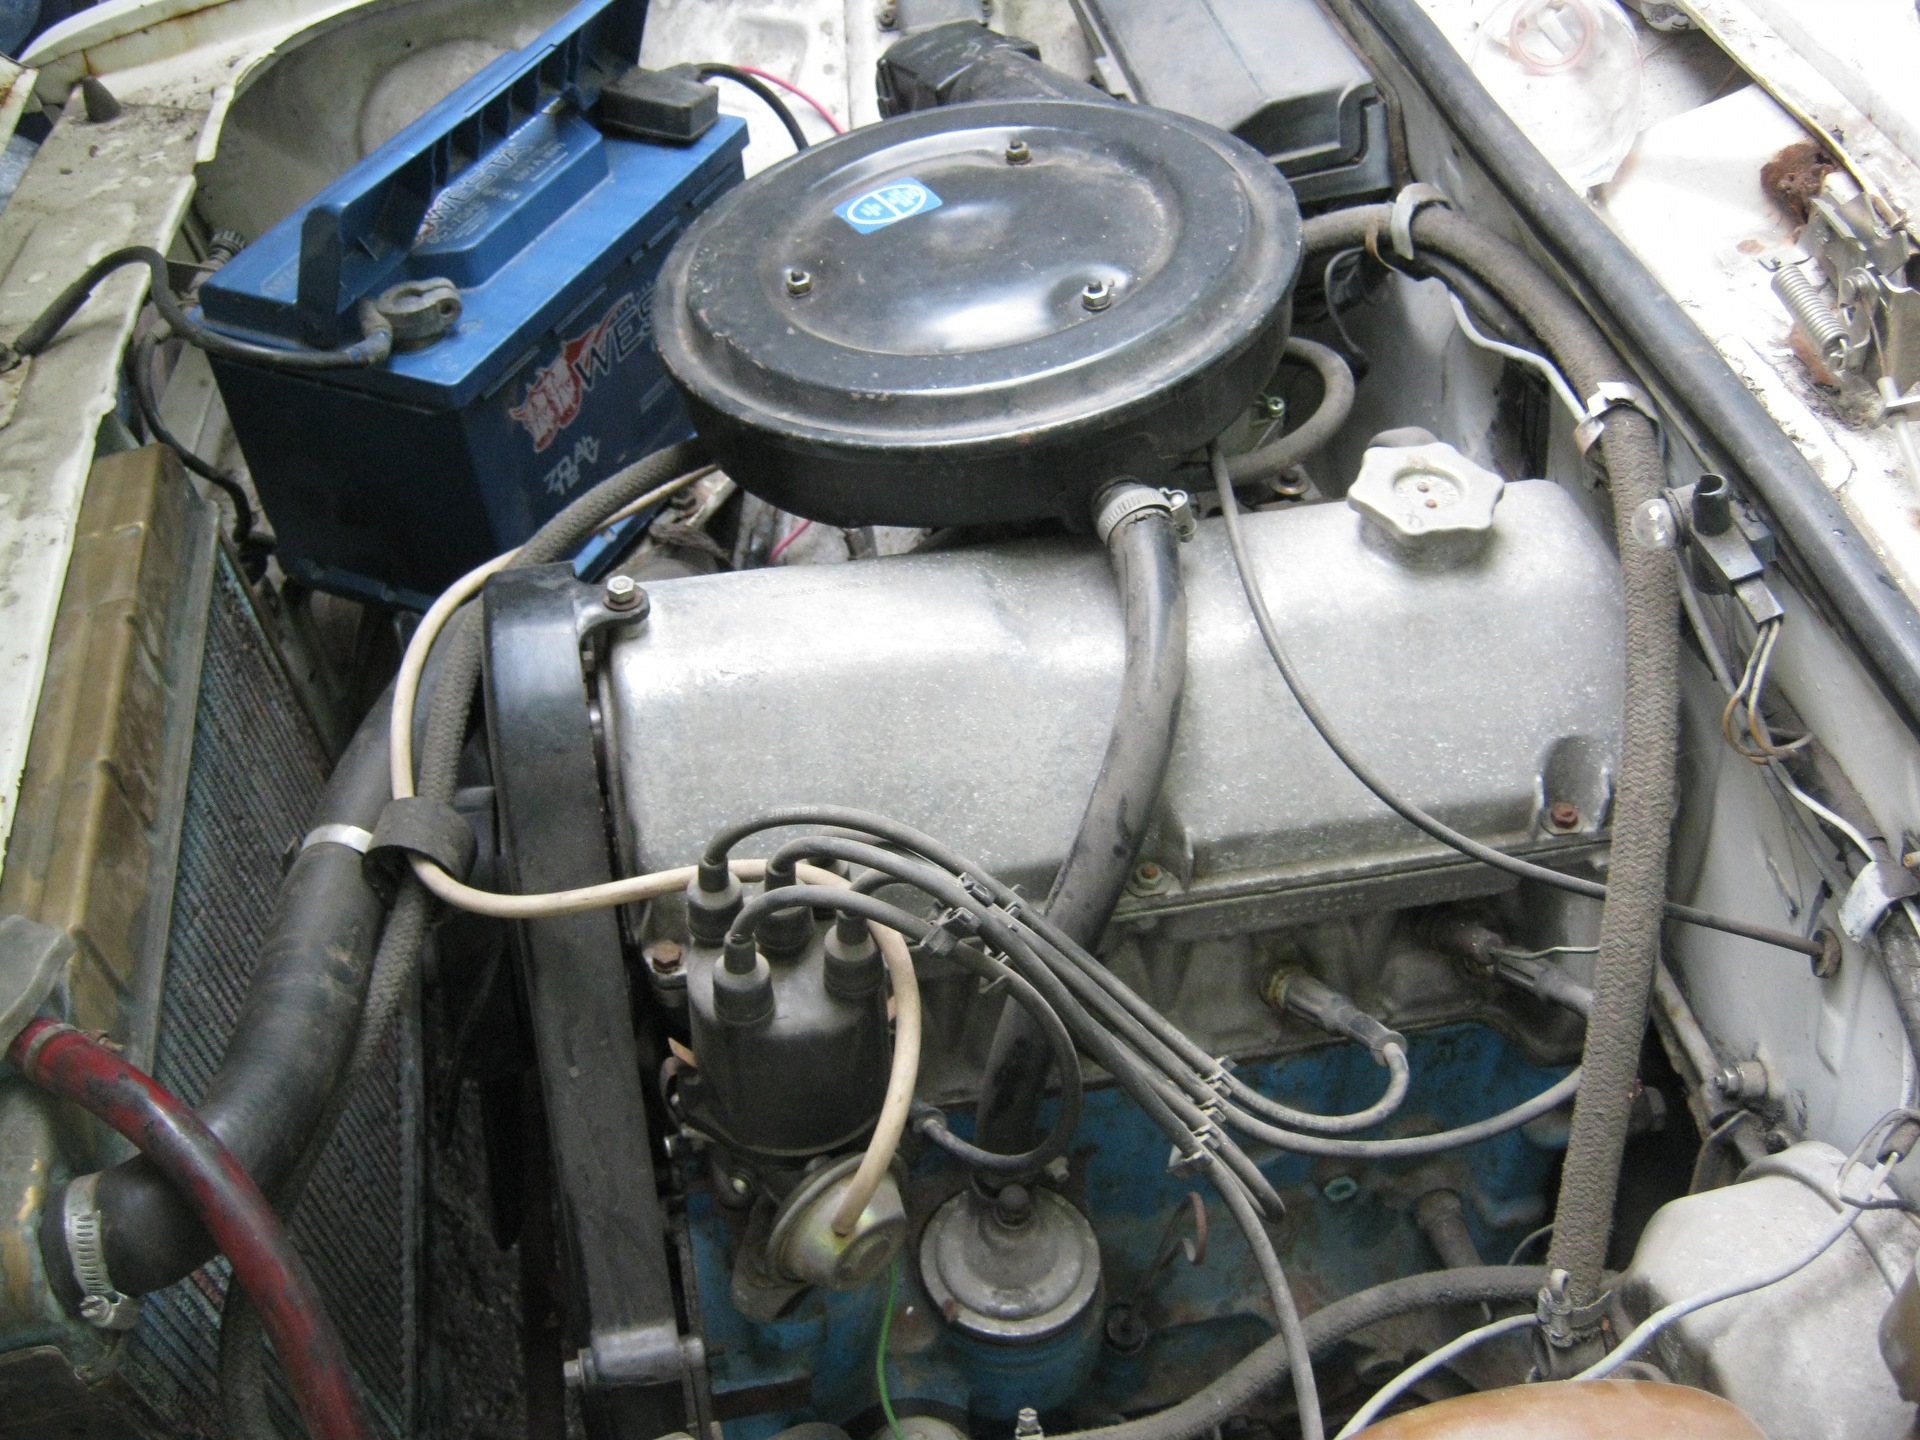 Ременный двигатель ваз 2105. Мотор ВАЗ 2105 ременной 1.3. Движок ВАЗ 2105. ВАЗ 2105 инжектор. ВАЗ 2105 под капотом.